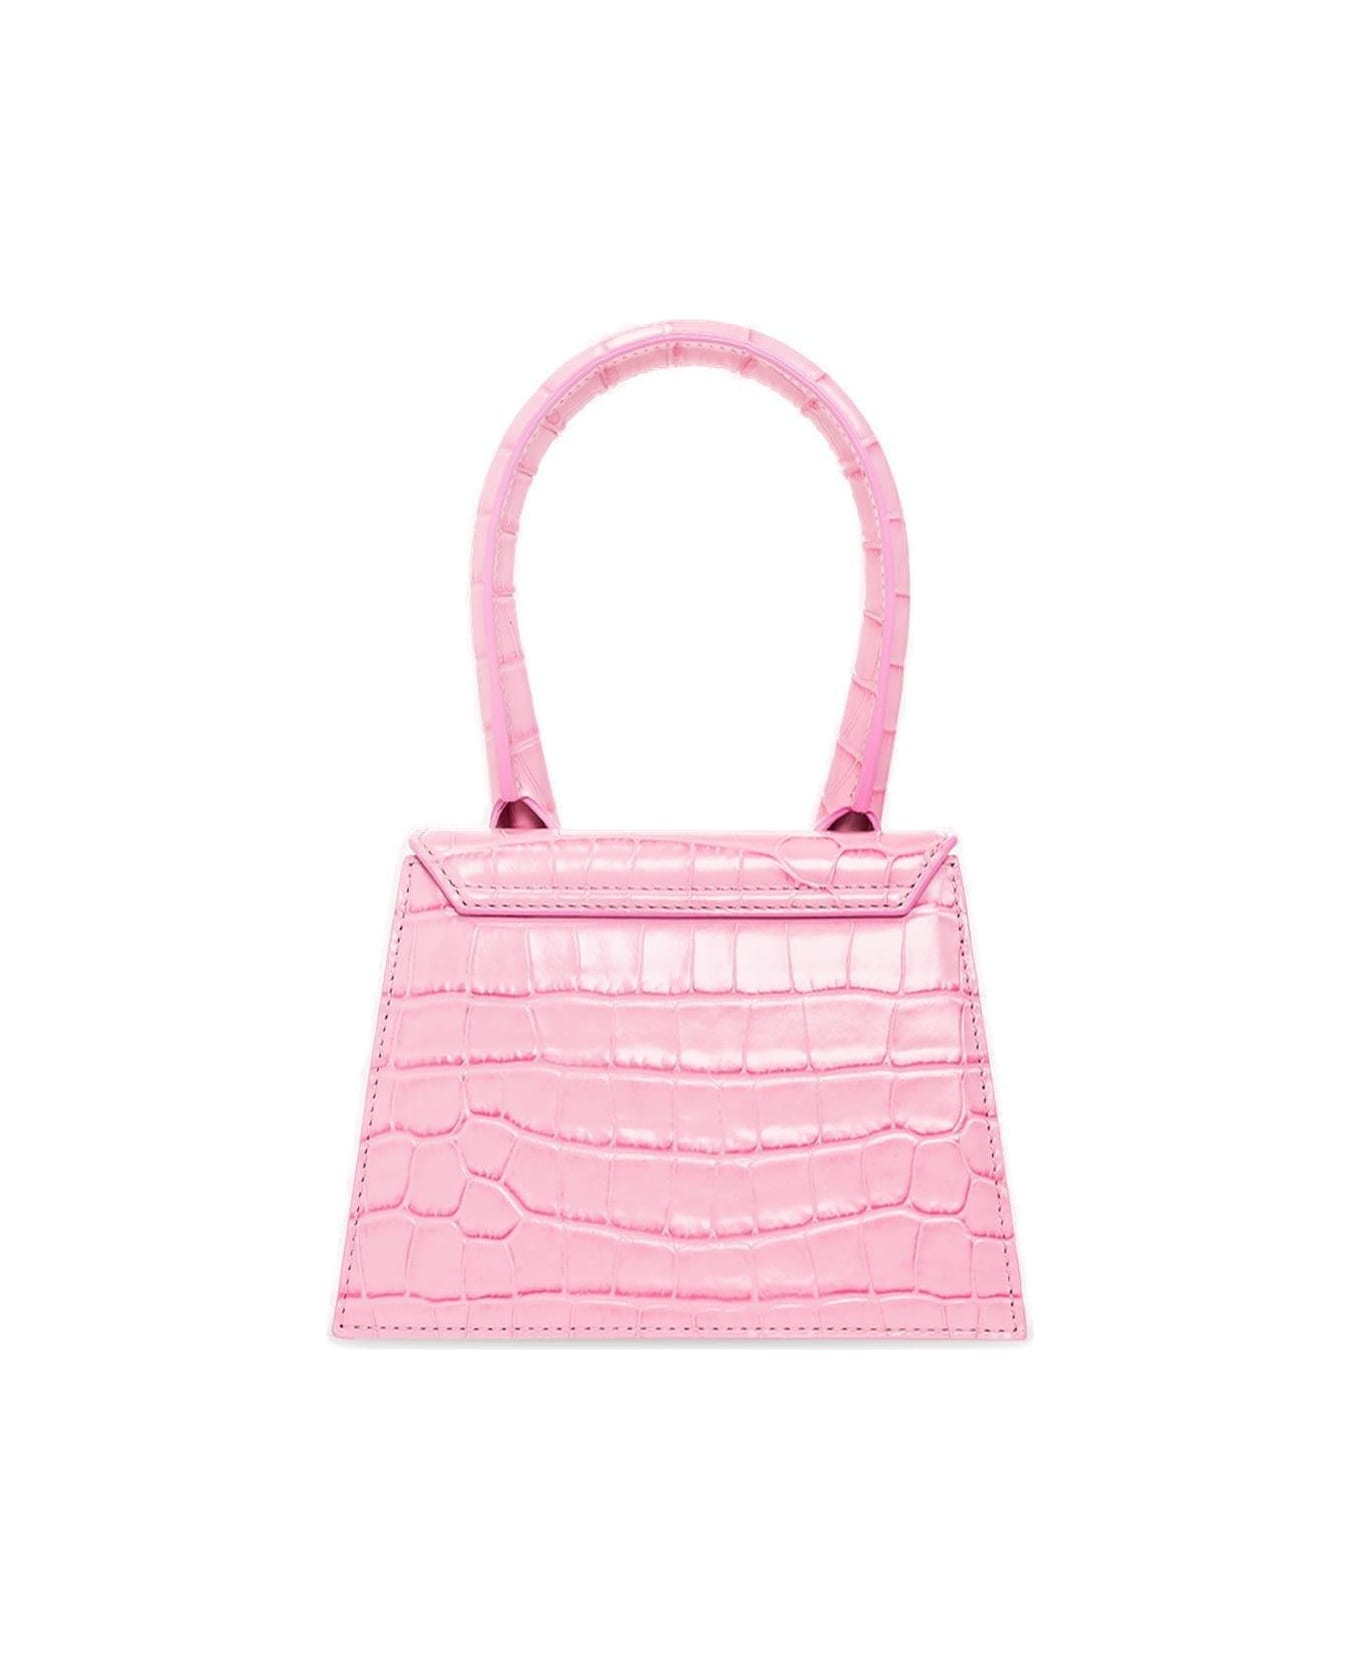 Jacquemus Le Chiquito Moyen Shoulder Bag - Pink